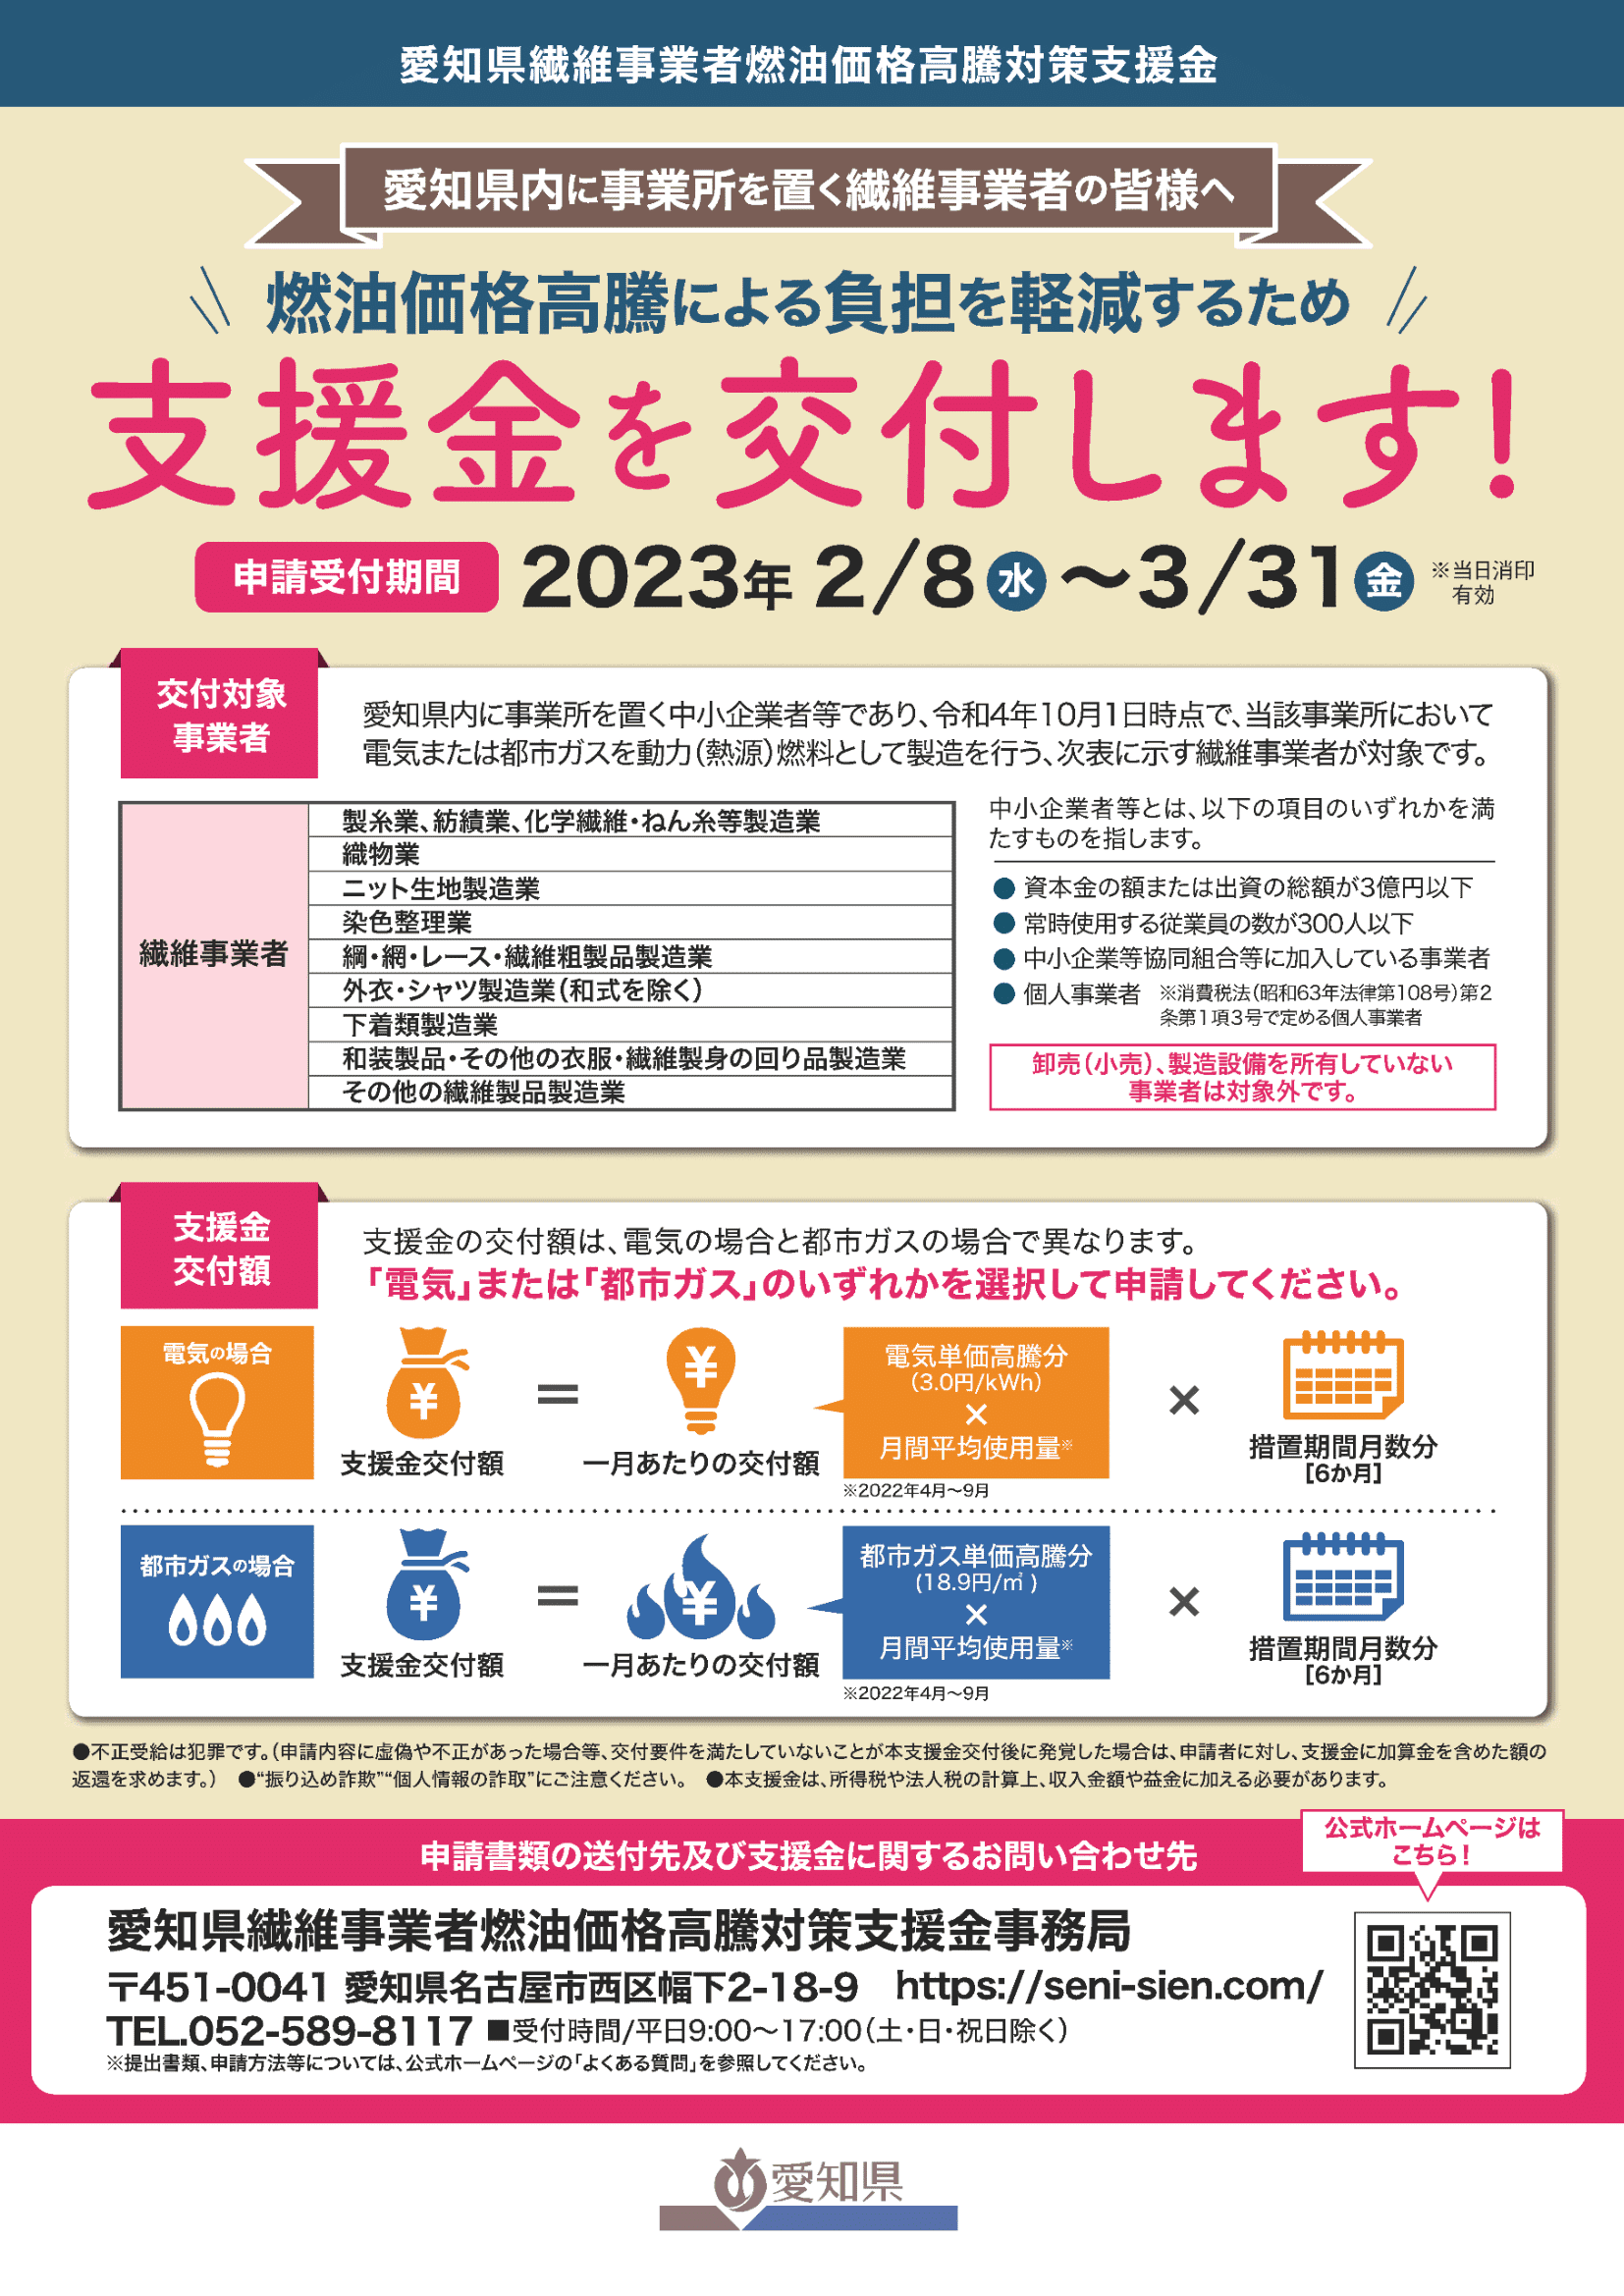 「愛知県繊維事業者燃油価格高騰対策支援金」の申請受付の開始について